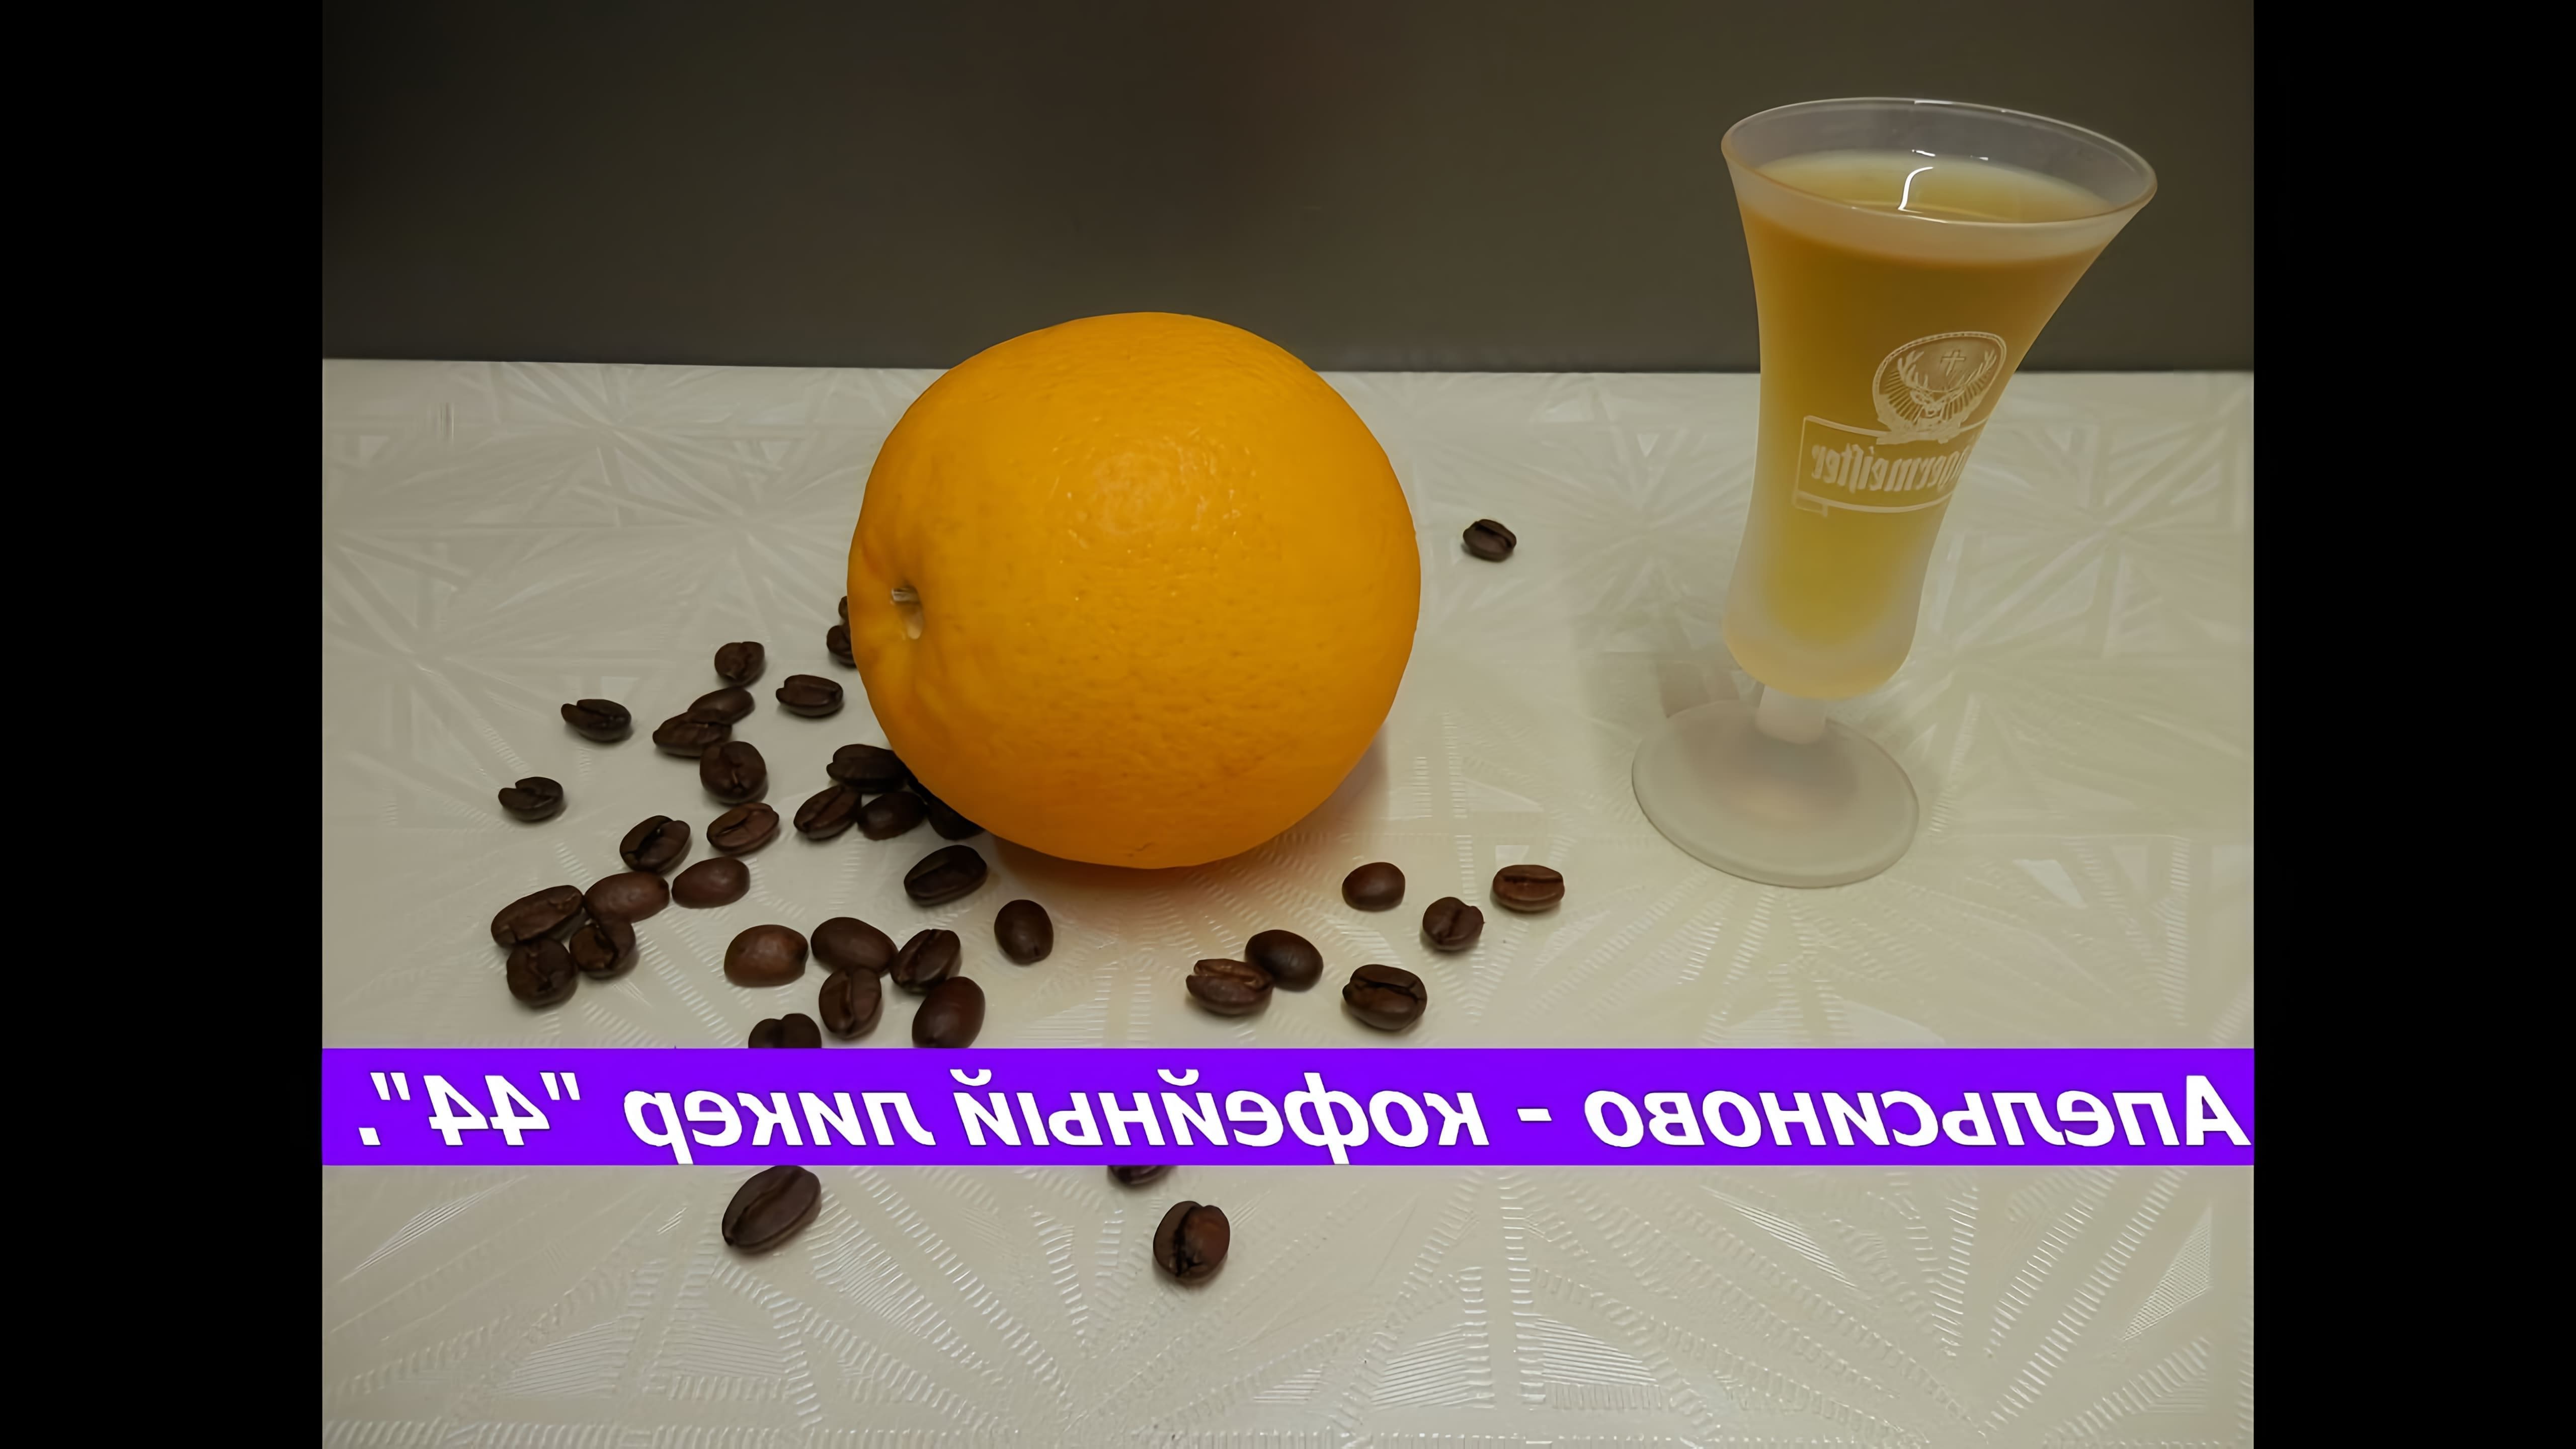 В этом видео демонстрируется процесс приготовления кофейно-апельсинового ликера "44"